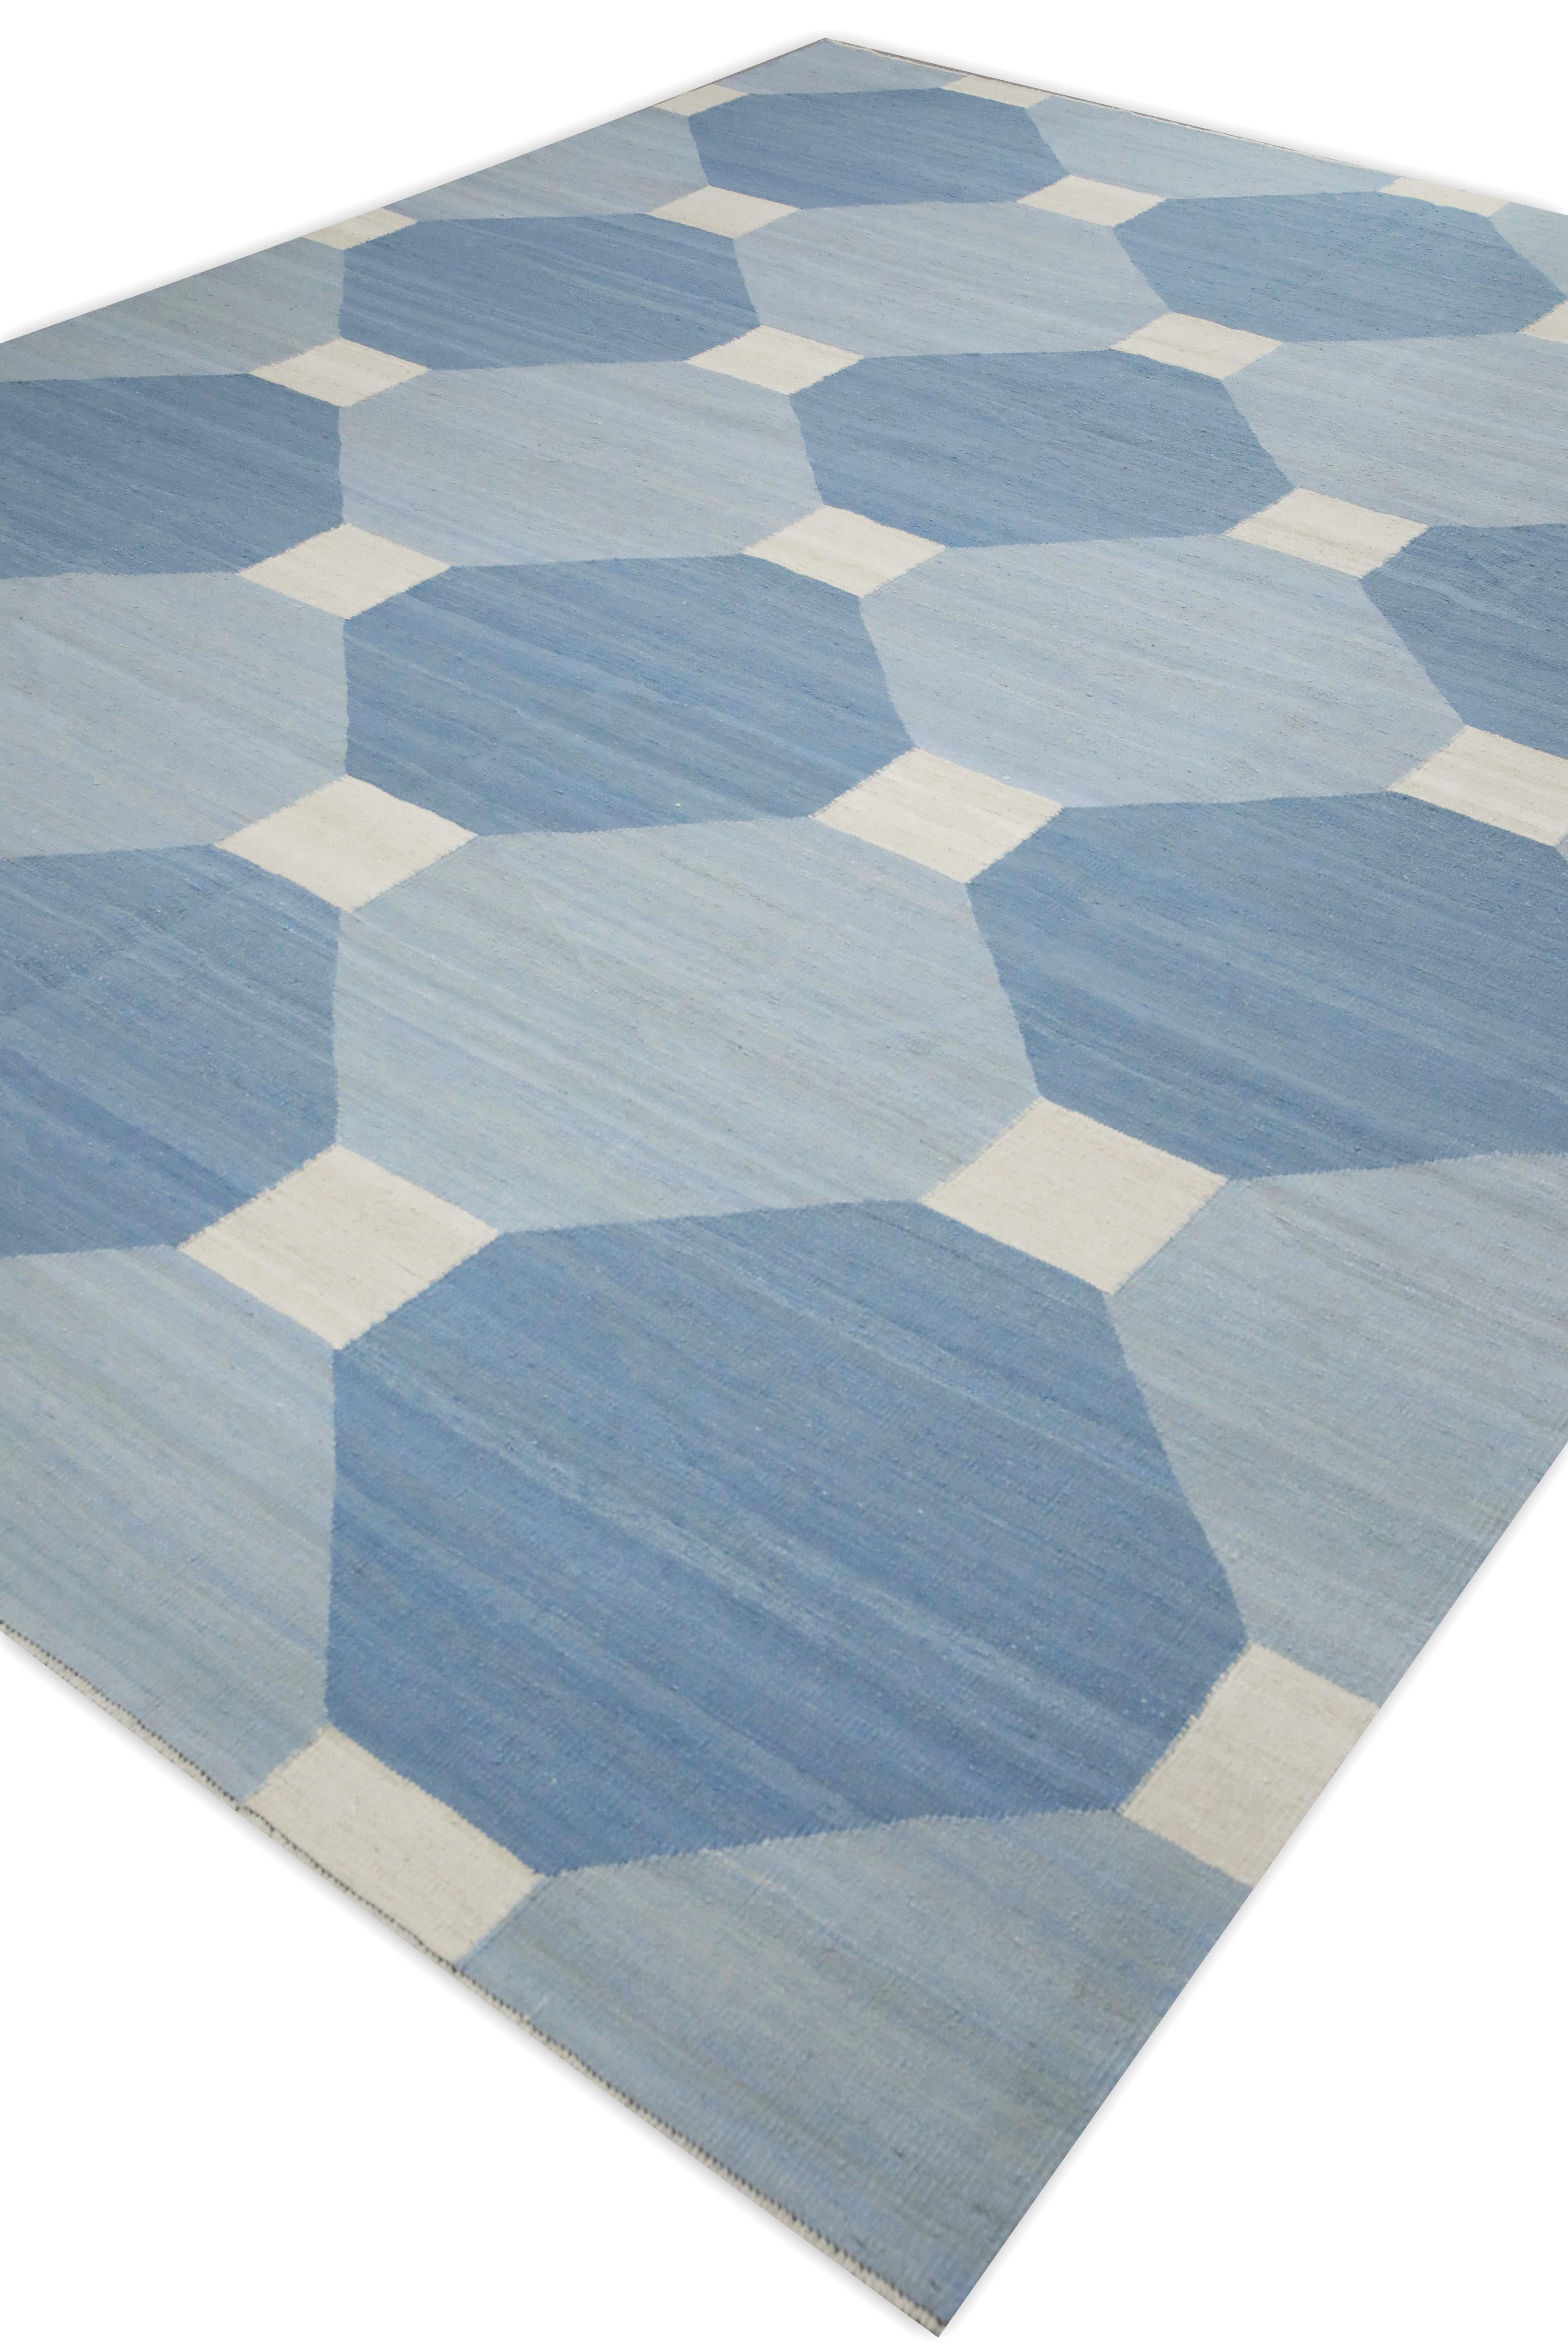 Kilim Blue Geometric Design Modern Flatweave Handmade Wool Rug 9'8